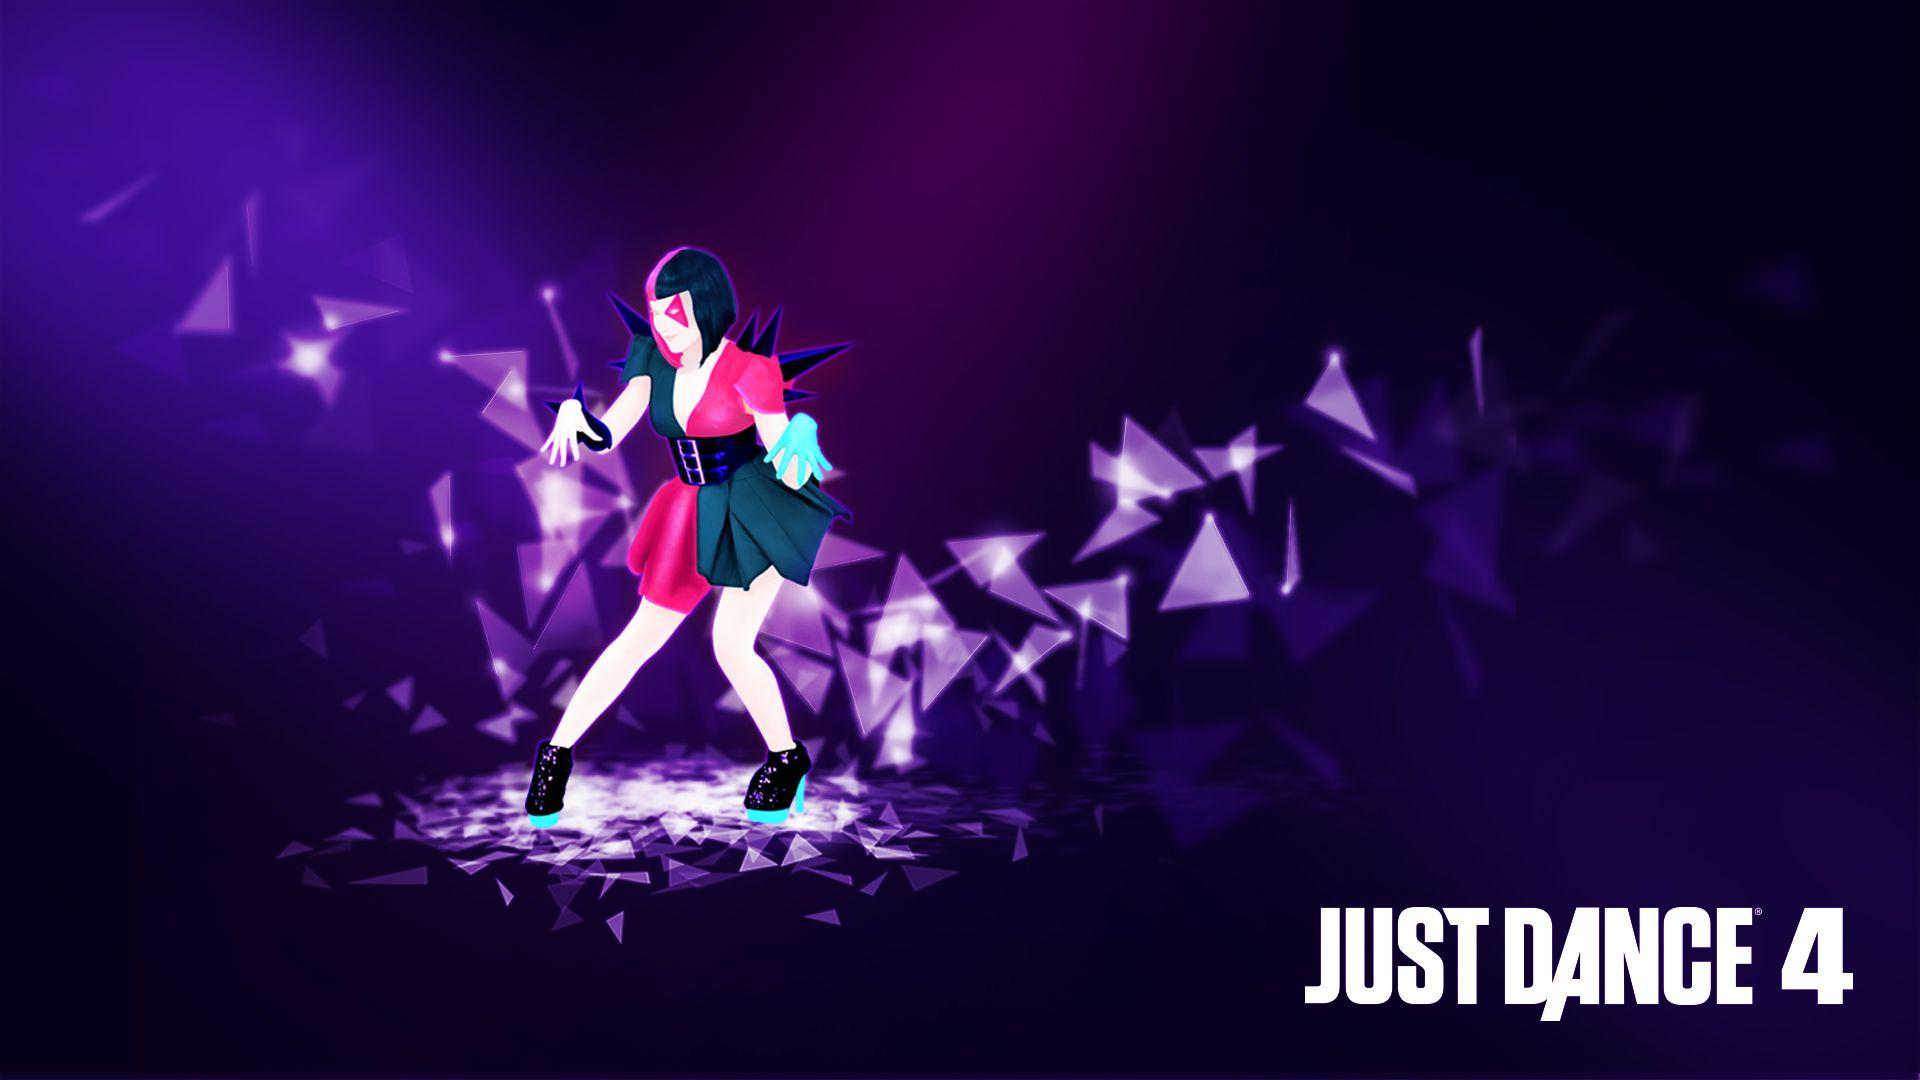 Just Dance 4- Disturbia Wallpaper. Just Dance 4